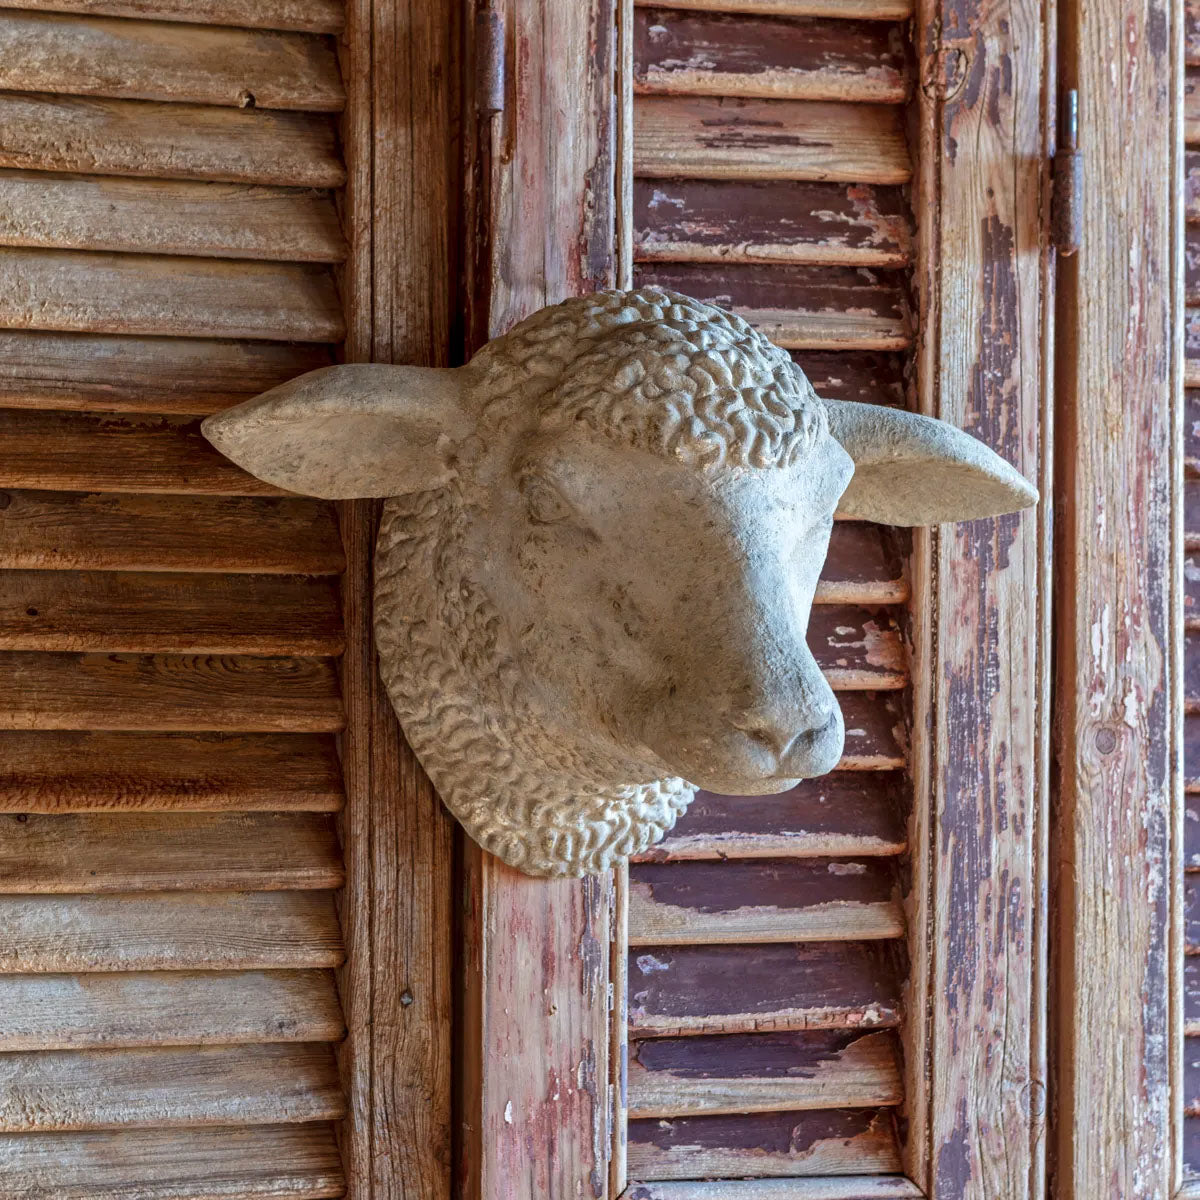 Weathered Sheep's Head Wall Decor